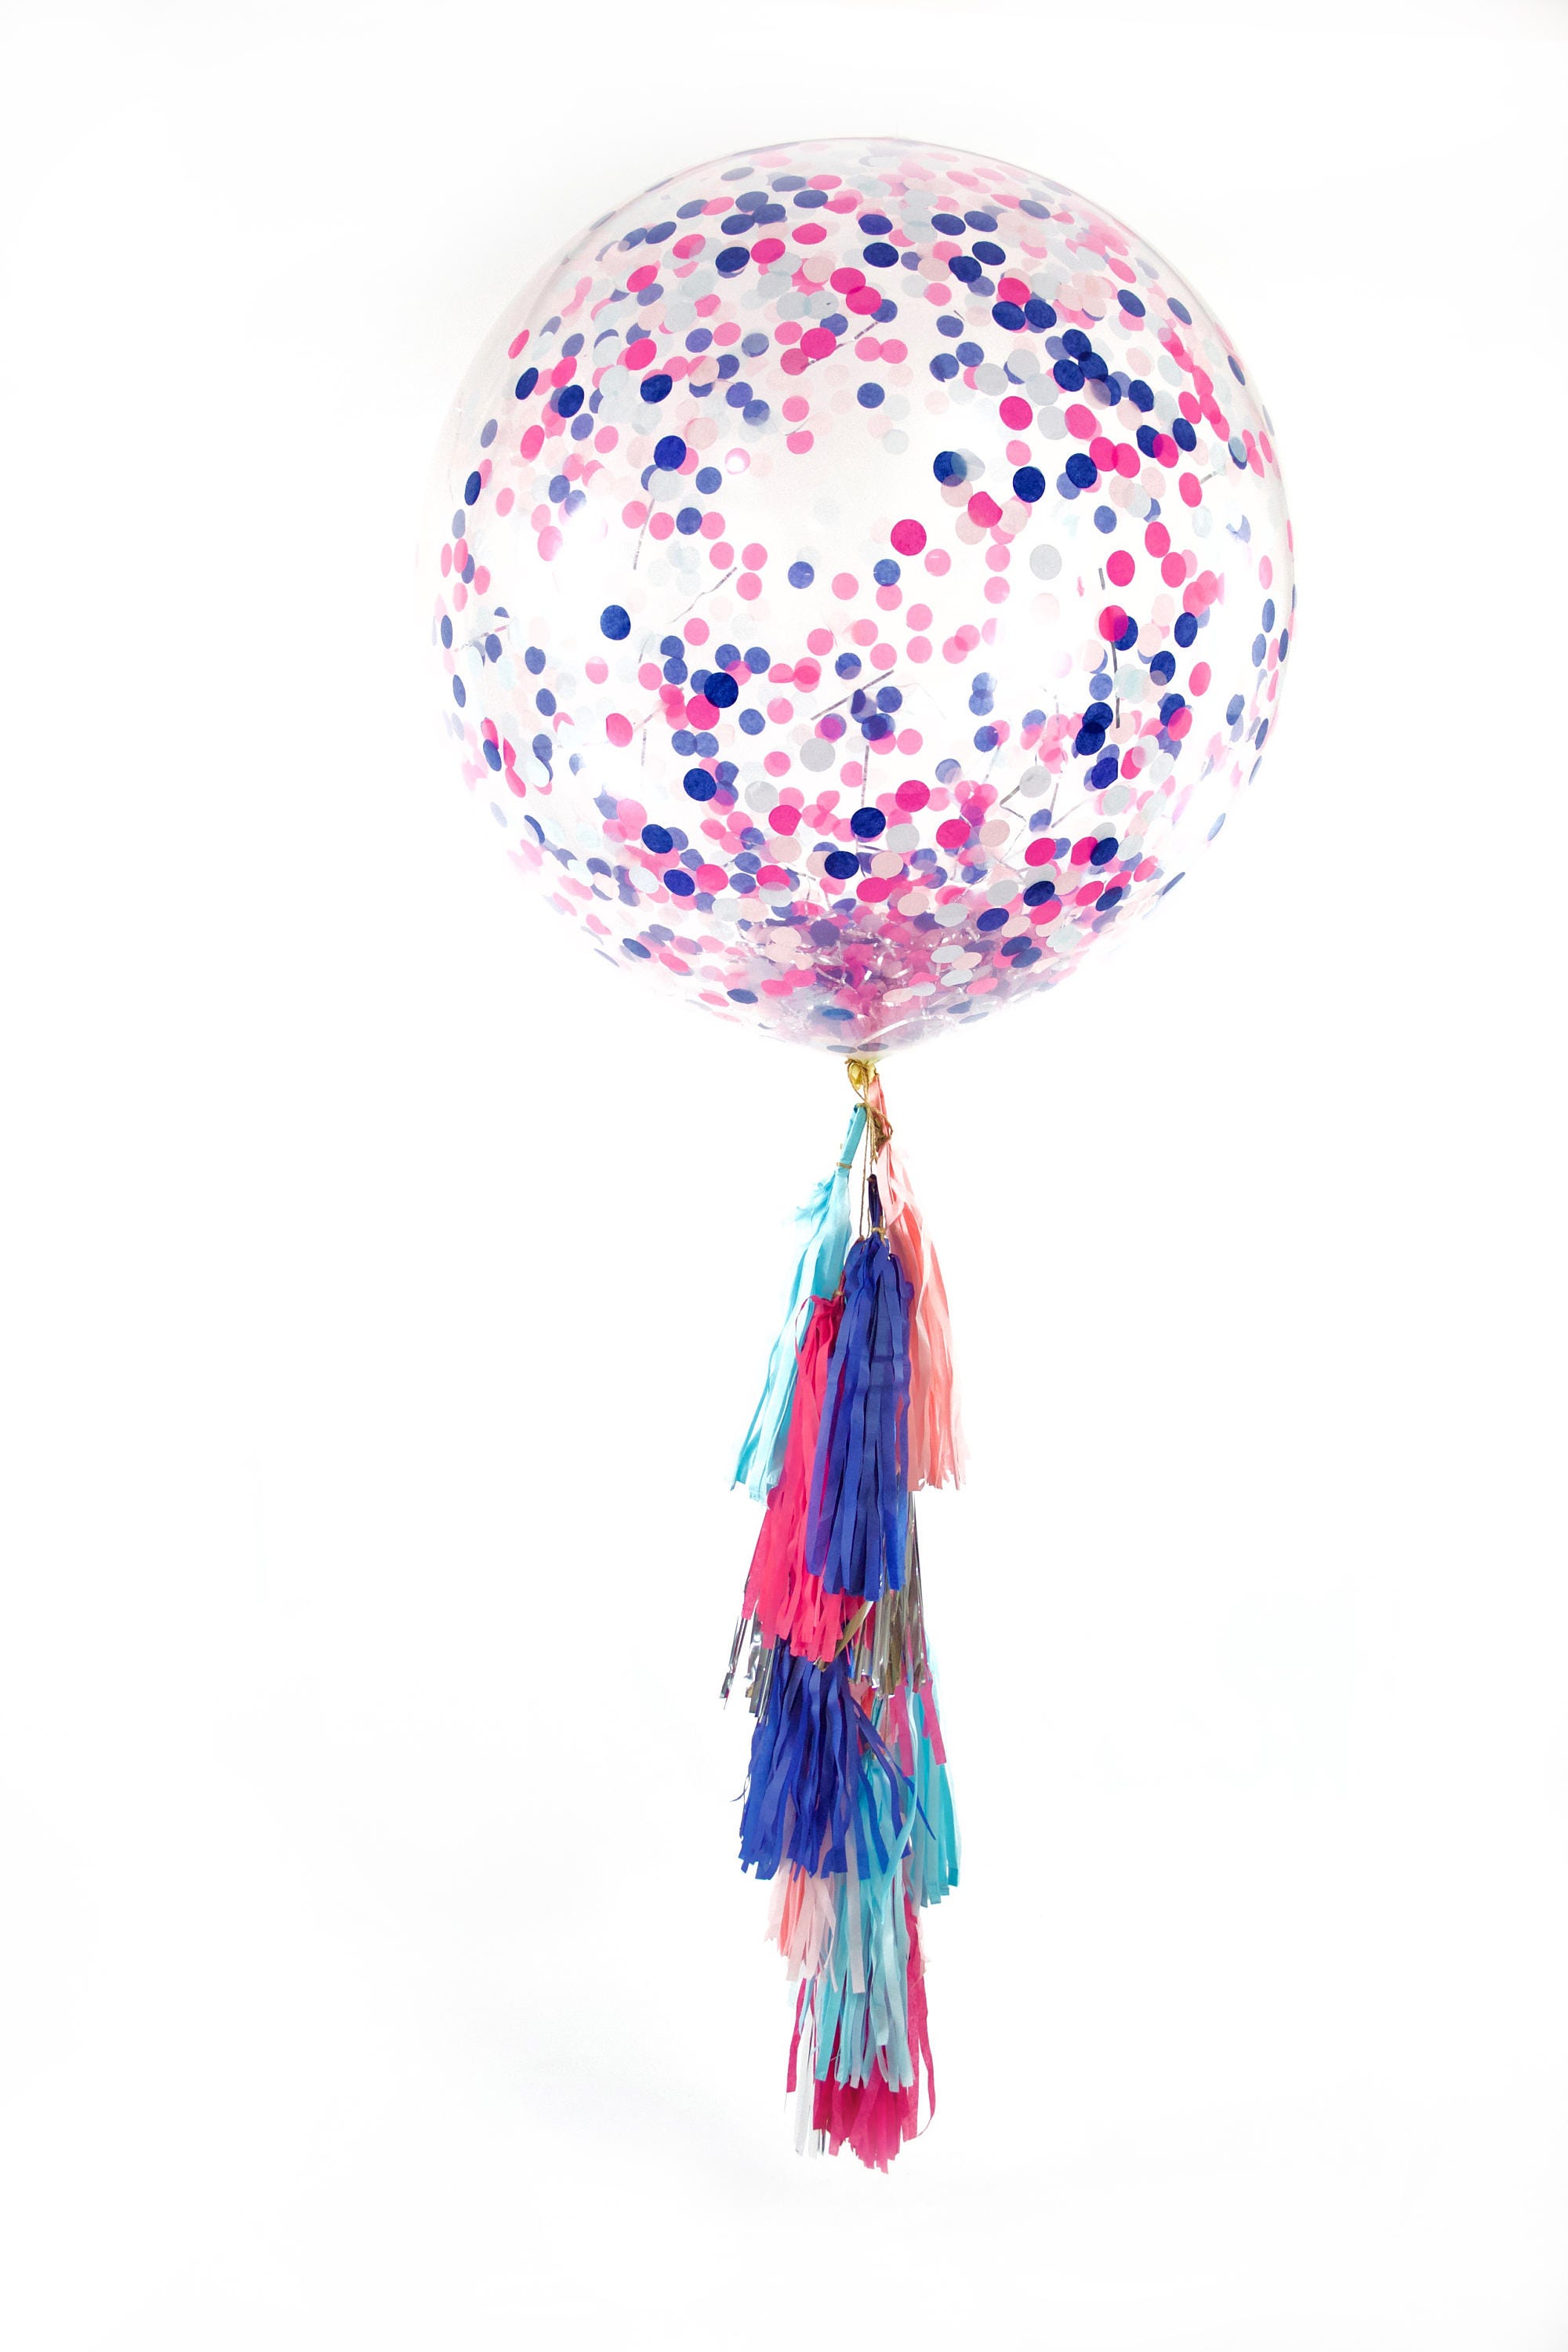 36 pouce Confettis Ballon Géant décorations Fête D'anniversaire